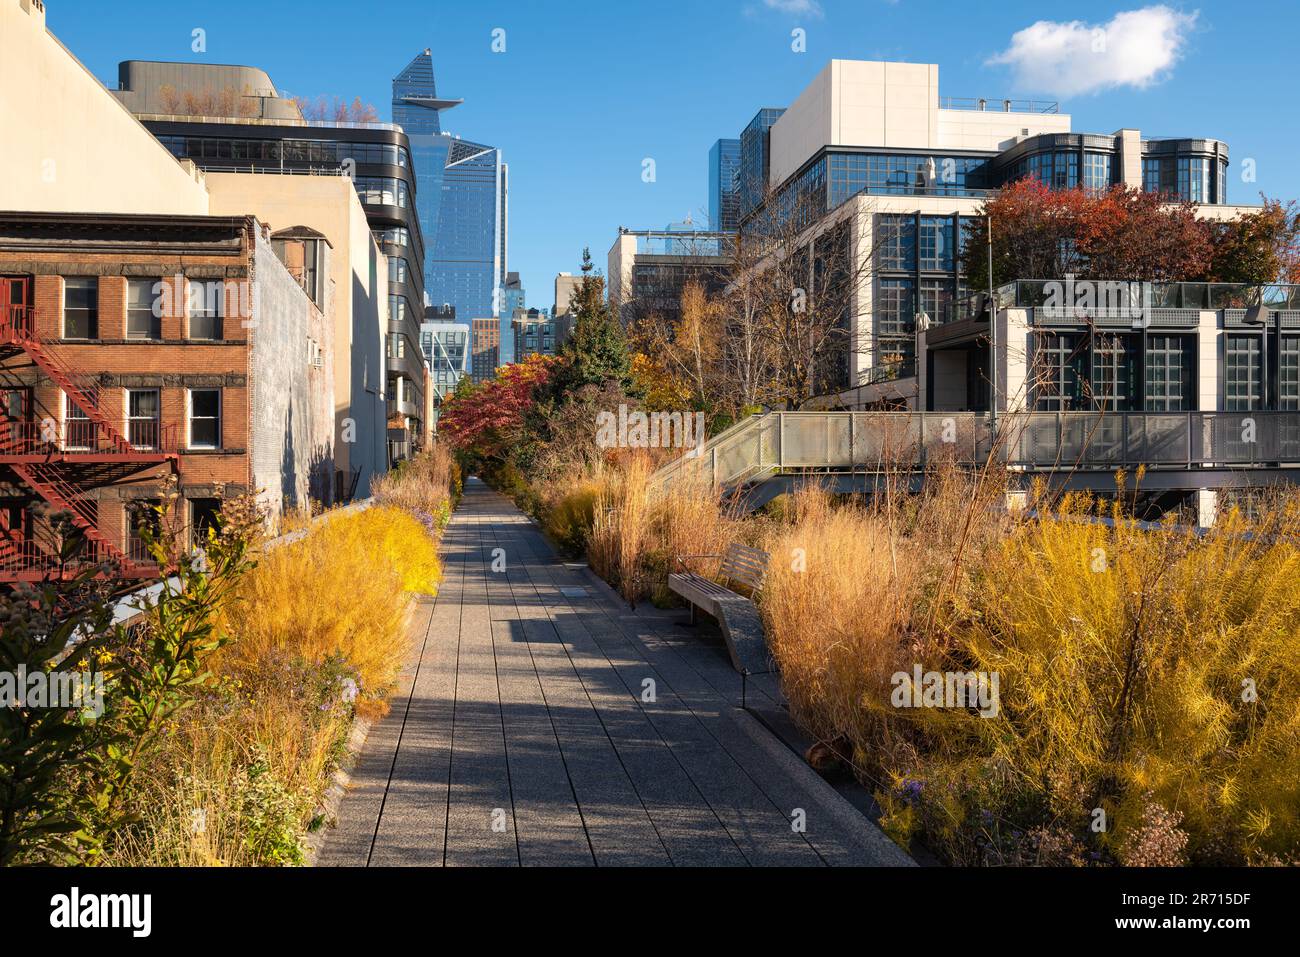 Die High Line Park Promenade im Herzen von Chelsea, Manhattan im Herbst. Erhöhter Grünweg mit Blick auf die Wolkenkratzer von Hudson Yards. In New York City Stockfoto